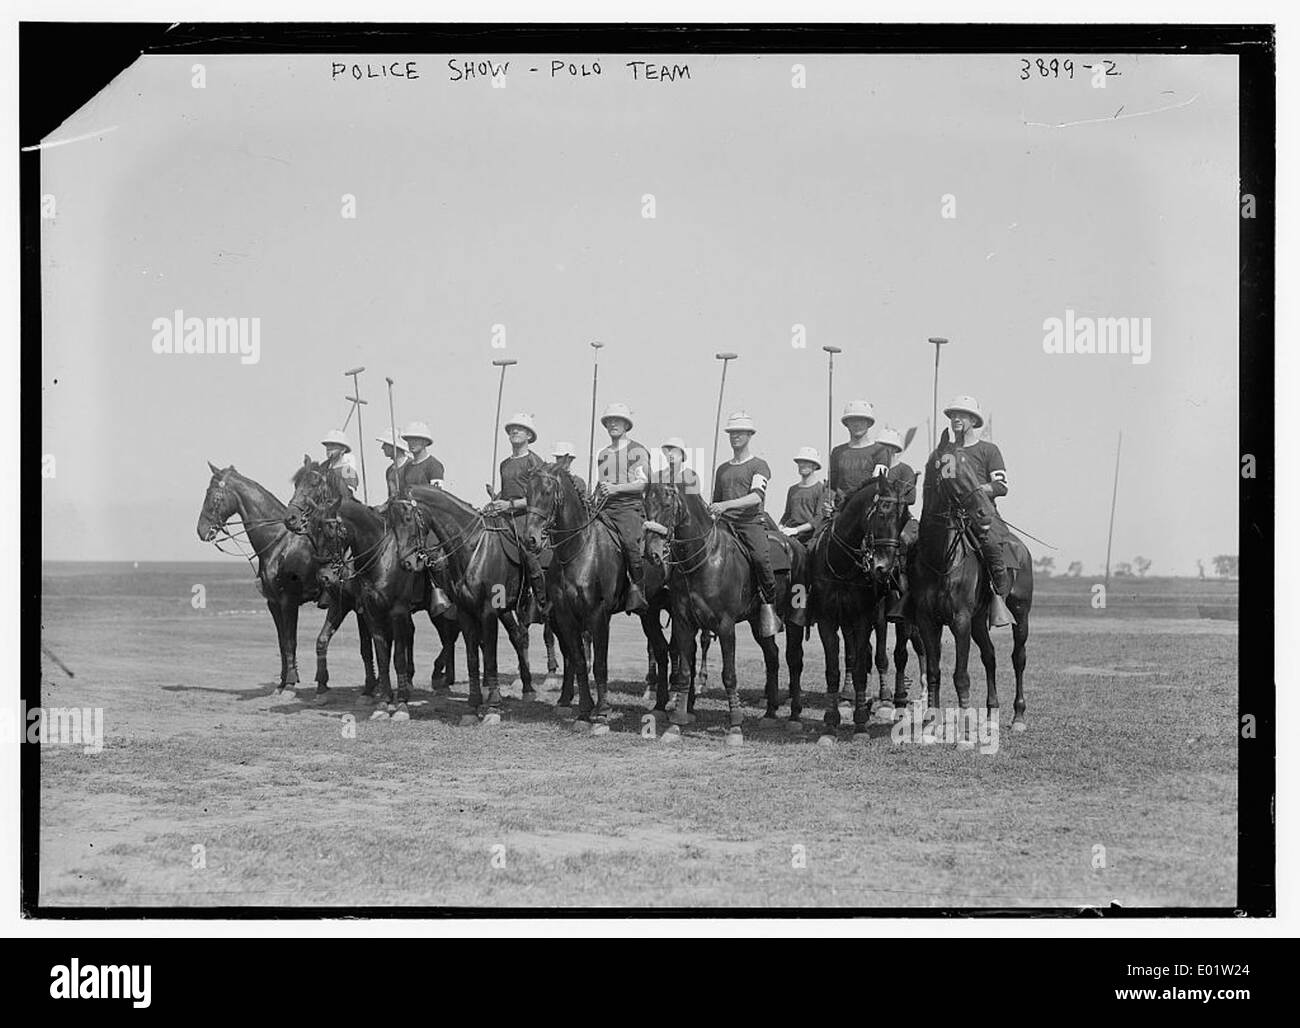 Police Show -- Polo Team Stock Photo